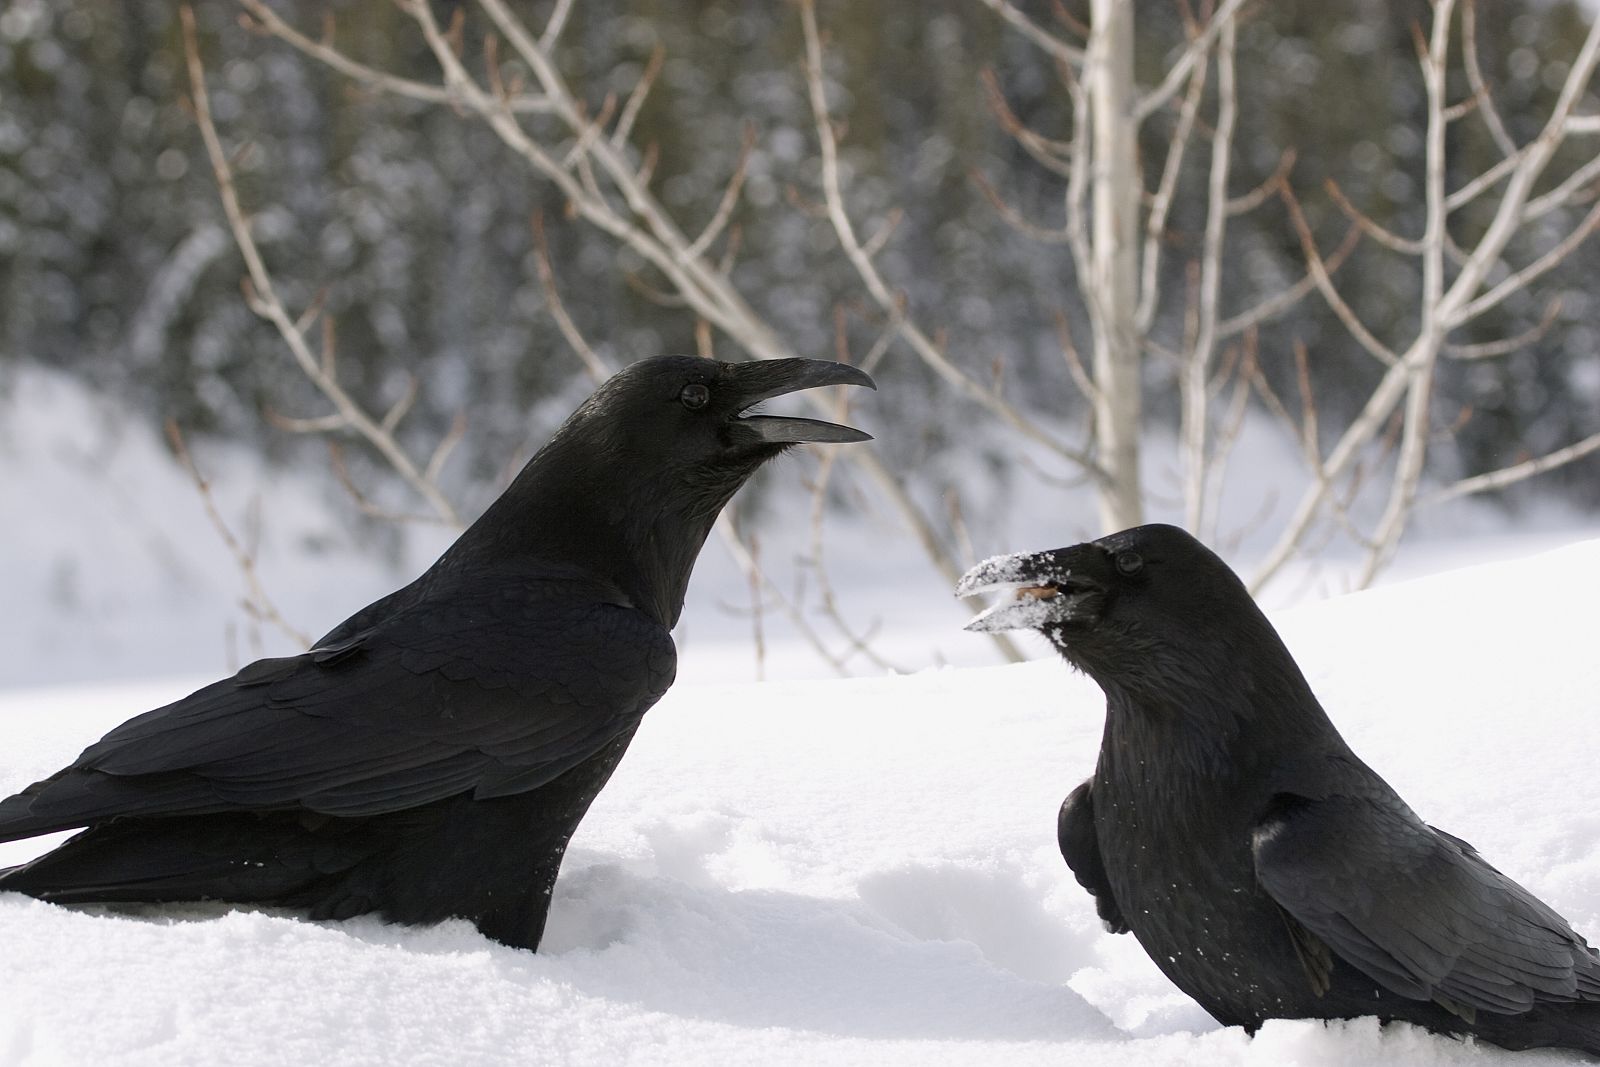 Los cuervos usan sus picos como si fuesen manos, para mostrar y ofrecer objetos, tales como musgo, piedras y ramas.